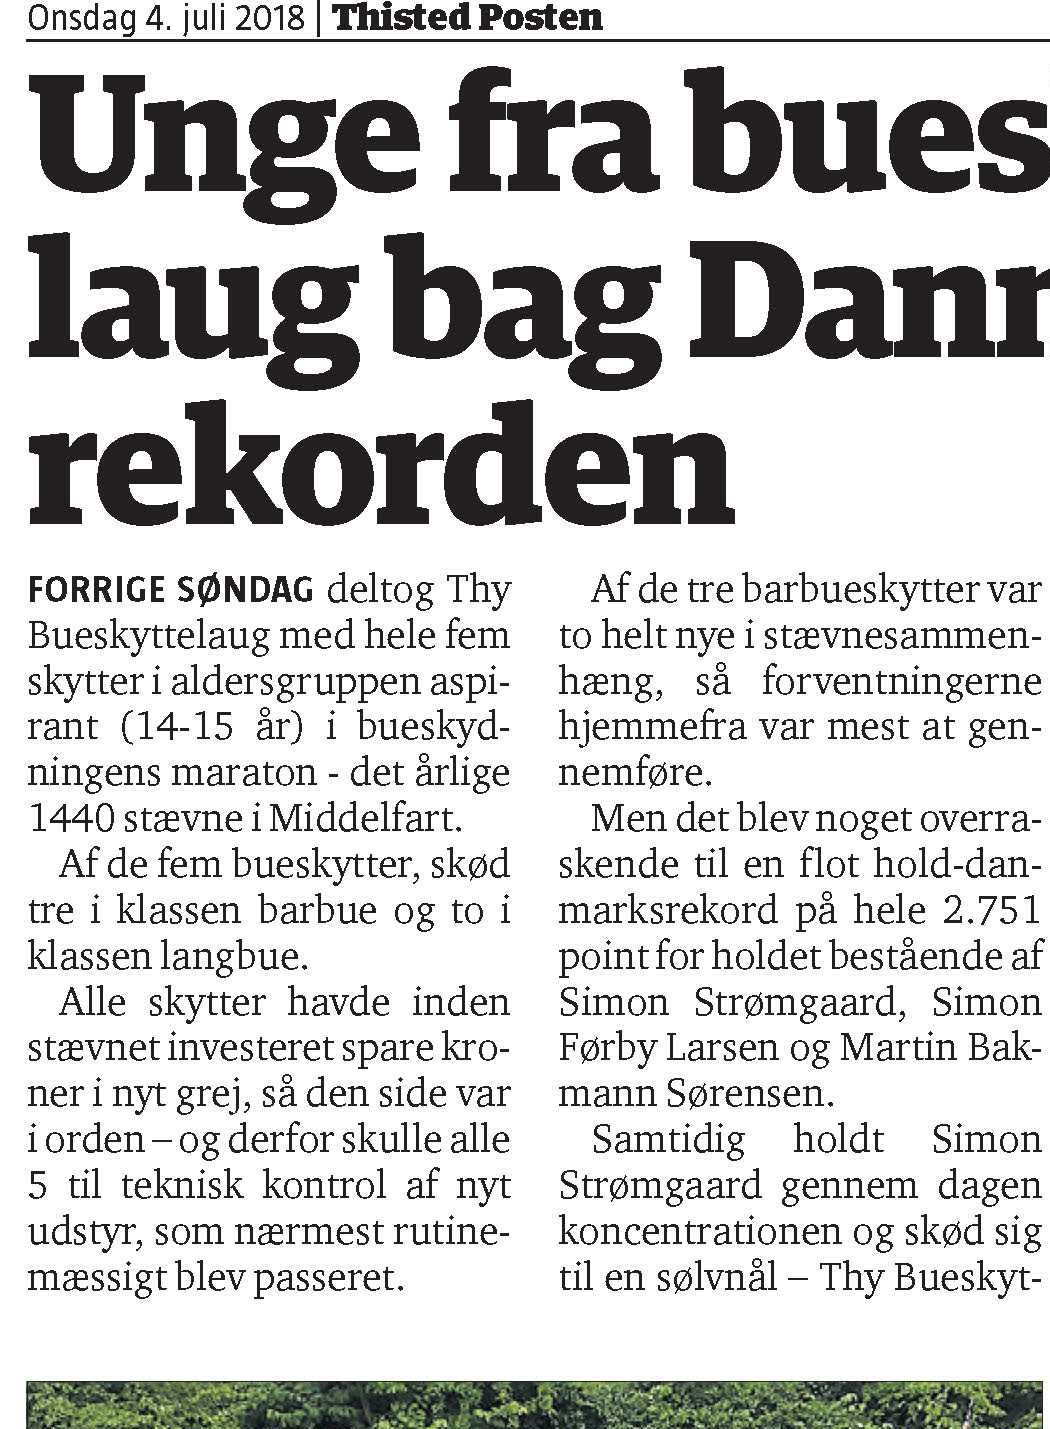 Unge fra Thy Bueskyttelaug bag Danmarksrekorden – Thisted Posten d. 4/7-2018